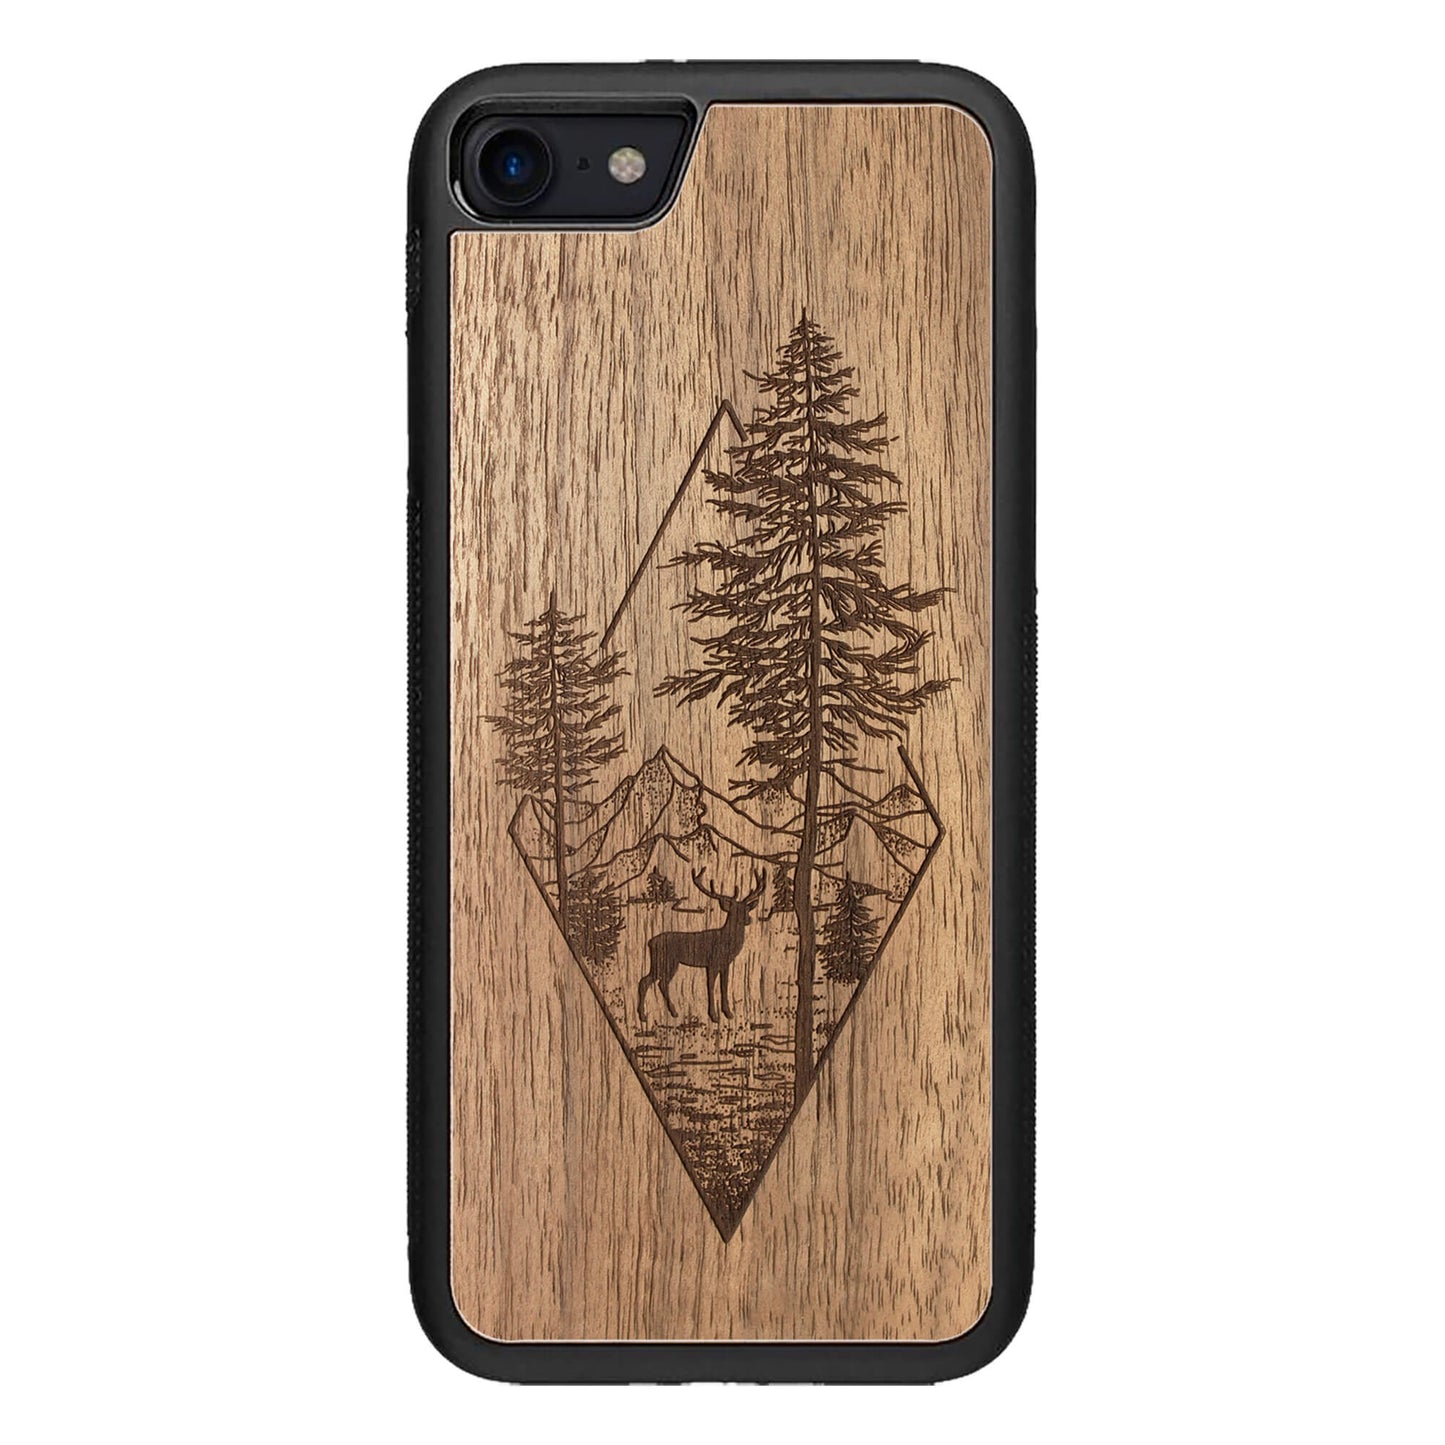 Wooden Case for iPhone SE [2020] Deer Woodland